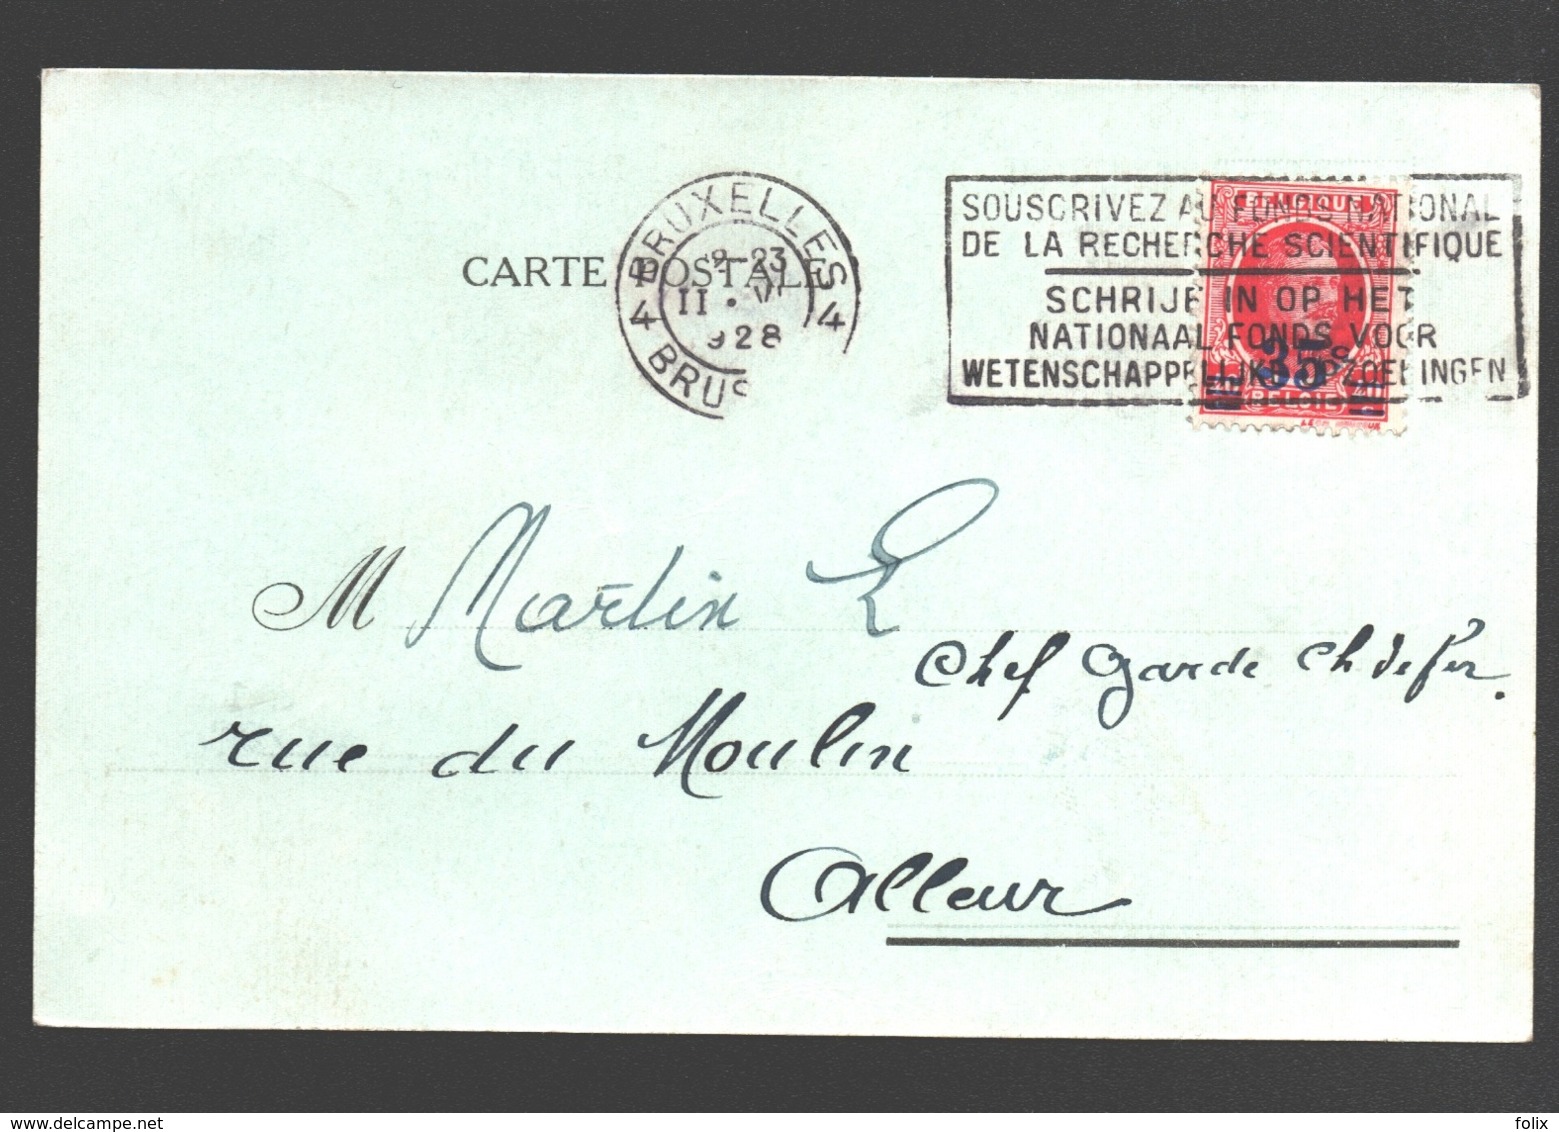 Union Hypothécaire - Fonds De Garantie - 1928 - Carte Postale - Banque & Assurance